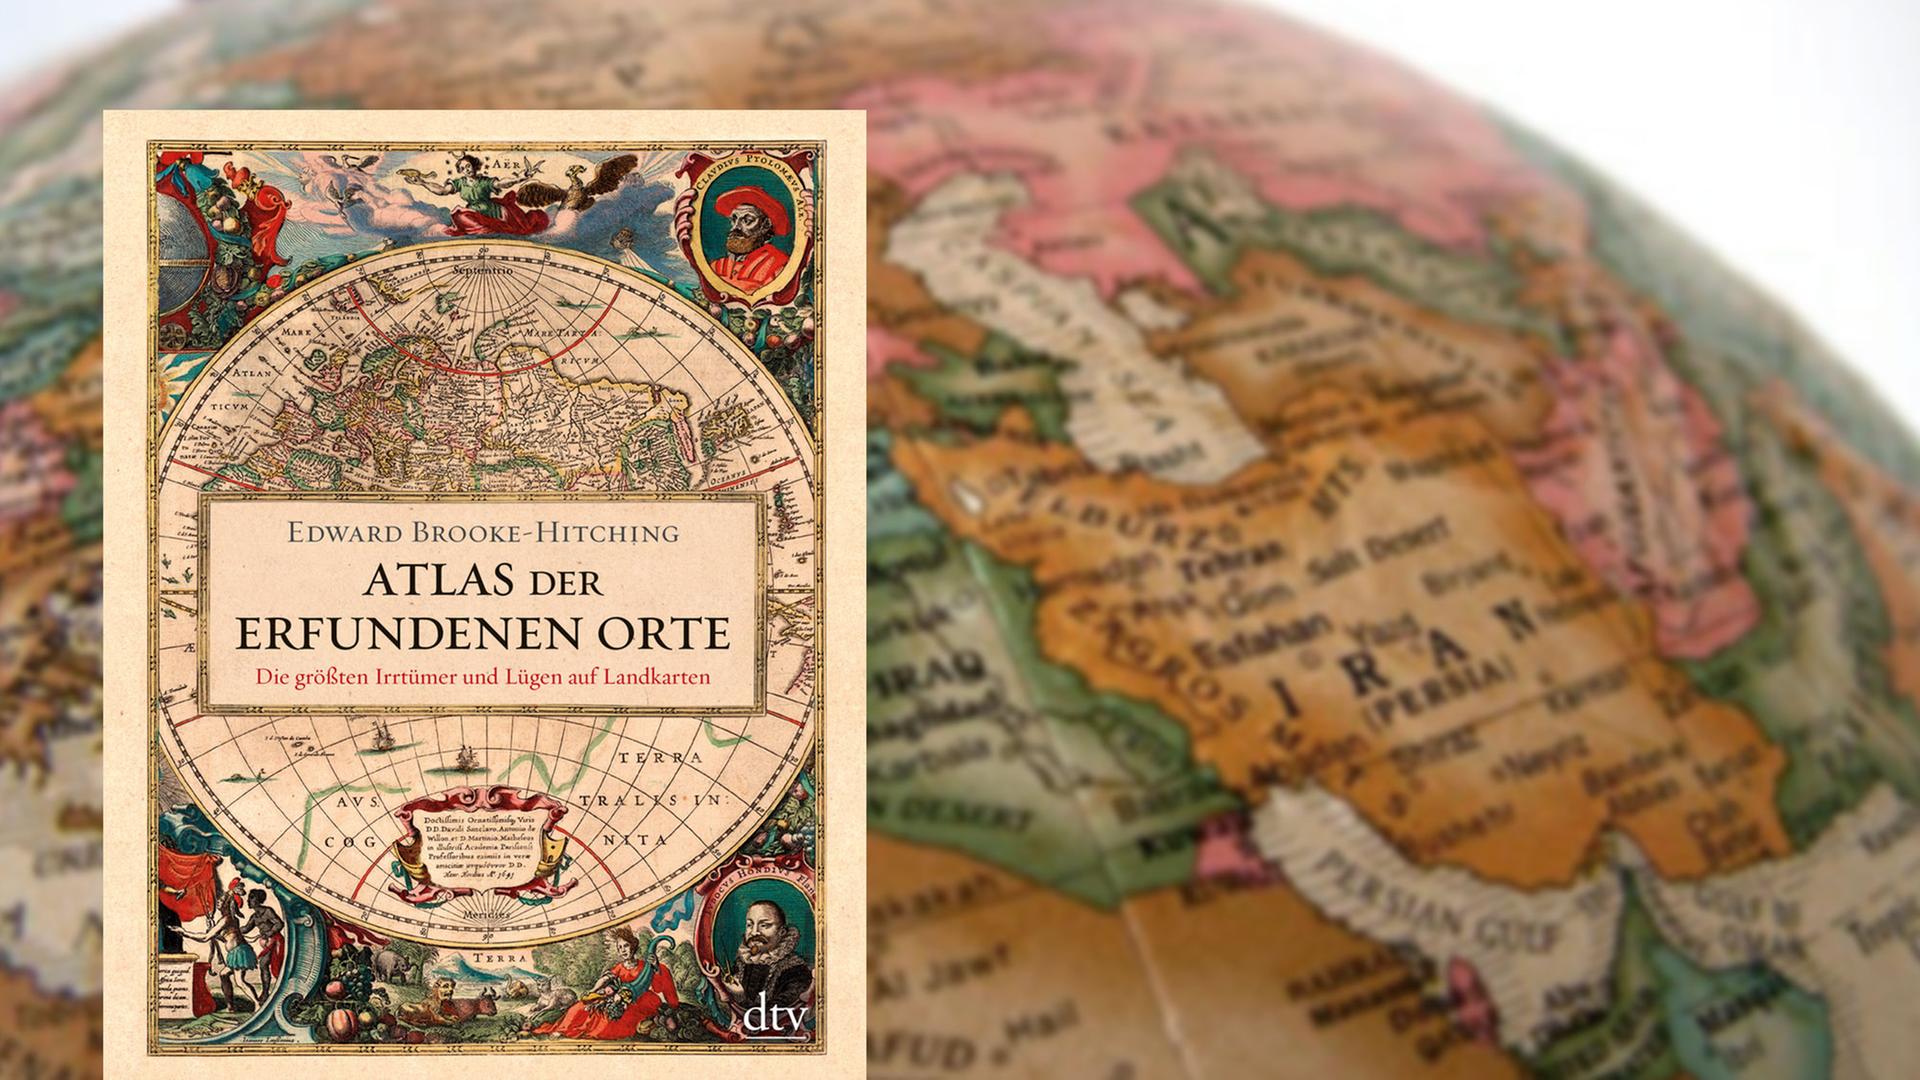 Buchcover "Atlas der erfundenen Orte" von Edward Brooke-Hitching, im Hintergrund ein Globus